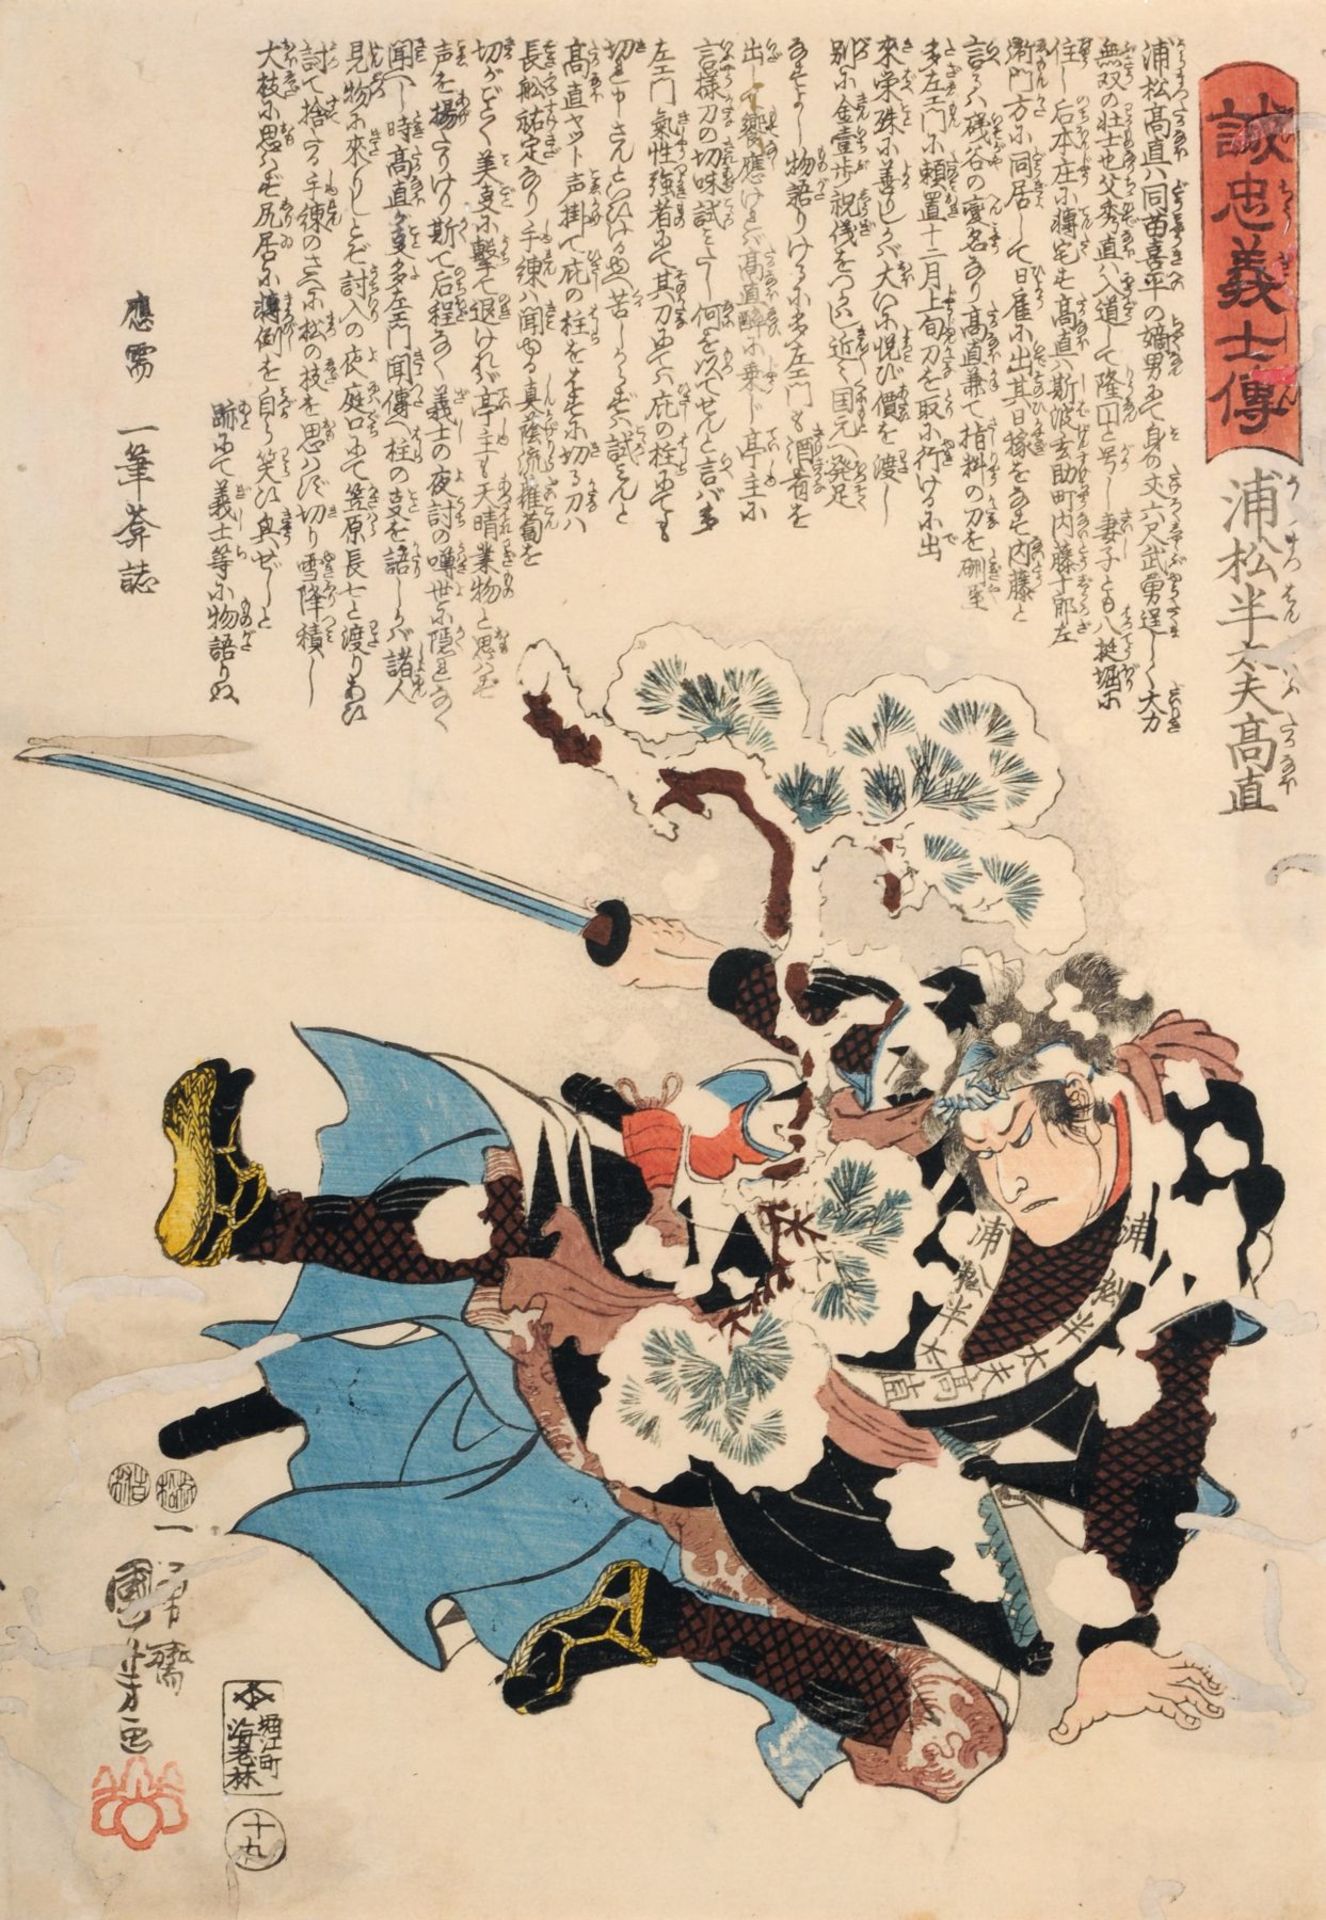 Utagawa Kuniyoshi "Uramatsu Handayû Takanao". 1847.